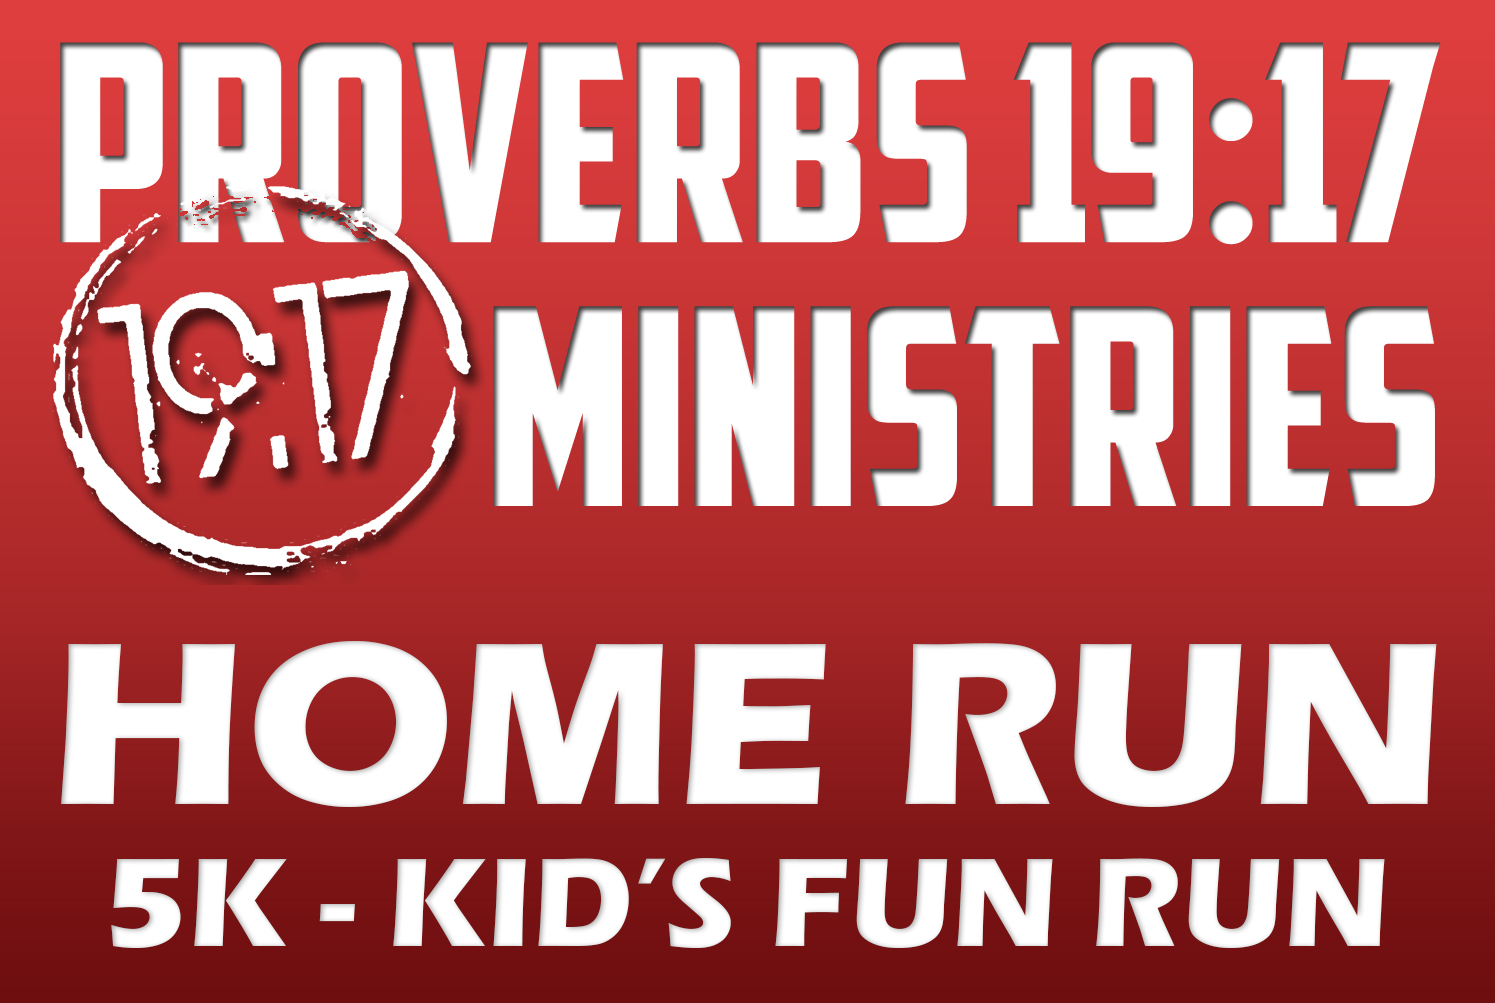 Proverbs 19:17 Ministries 8th Annual Home Run 5k